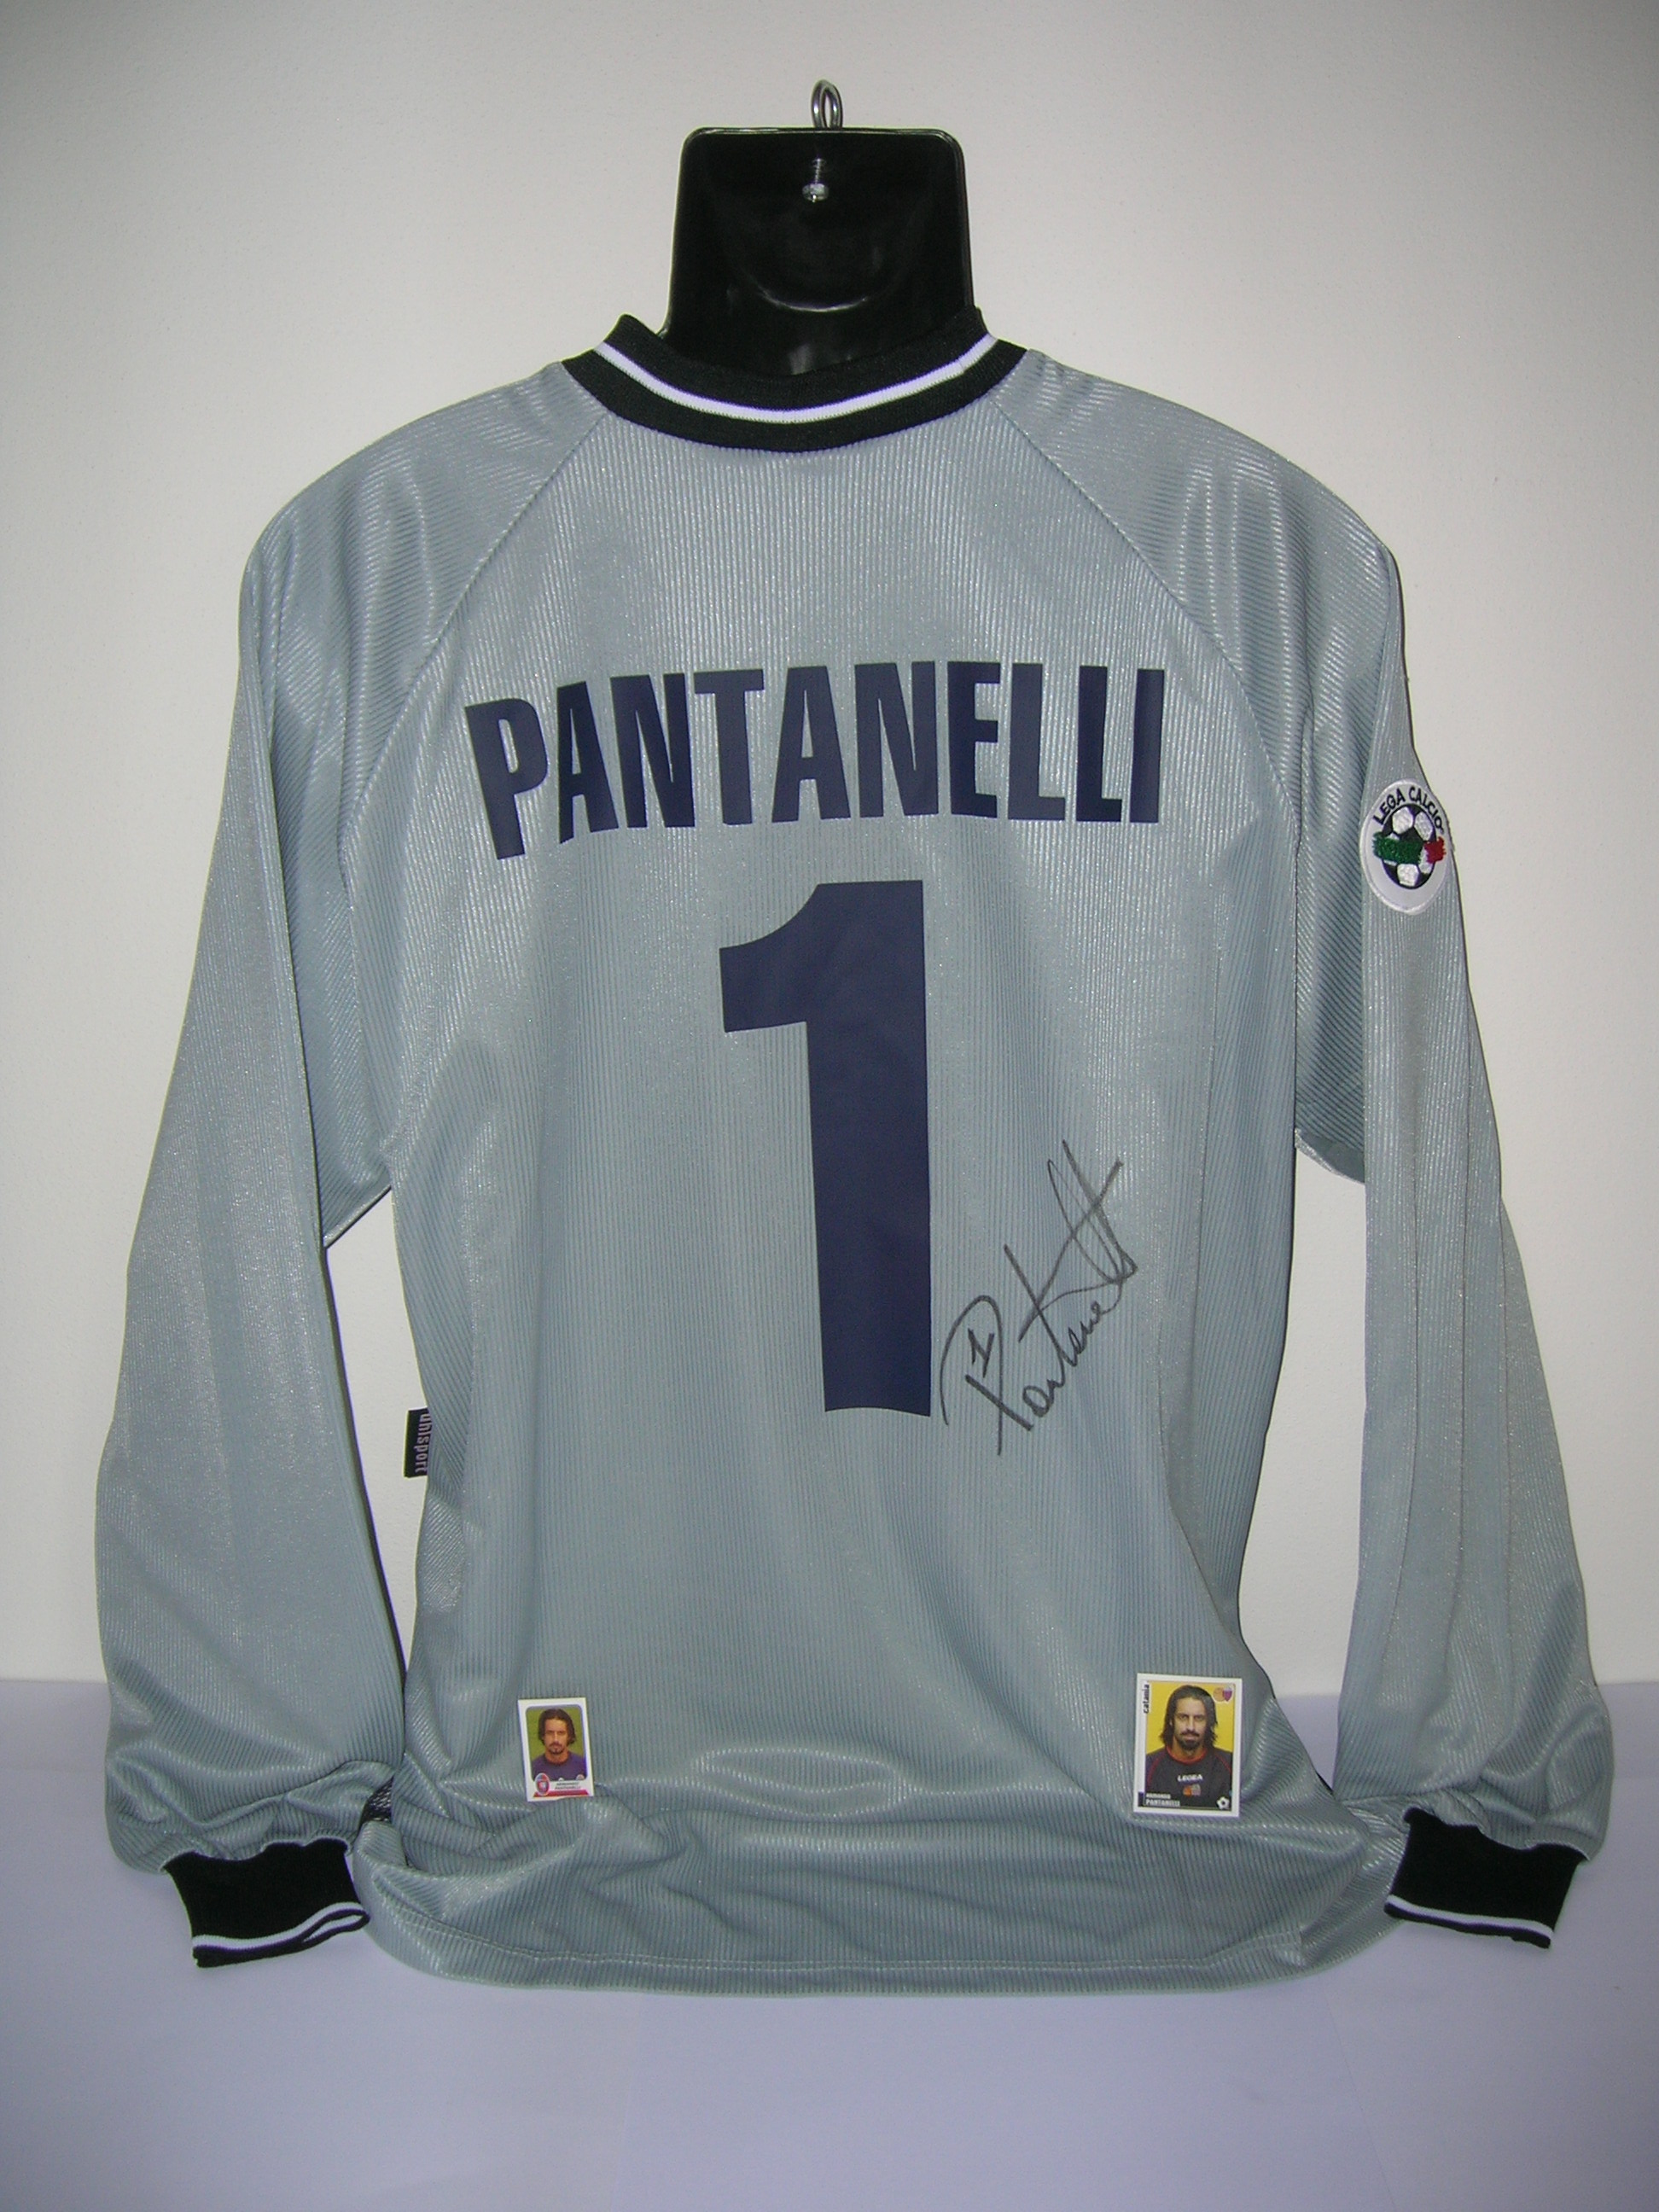 Pantanelli n.1 Cagliari B